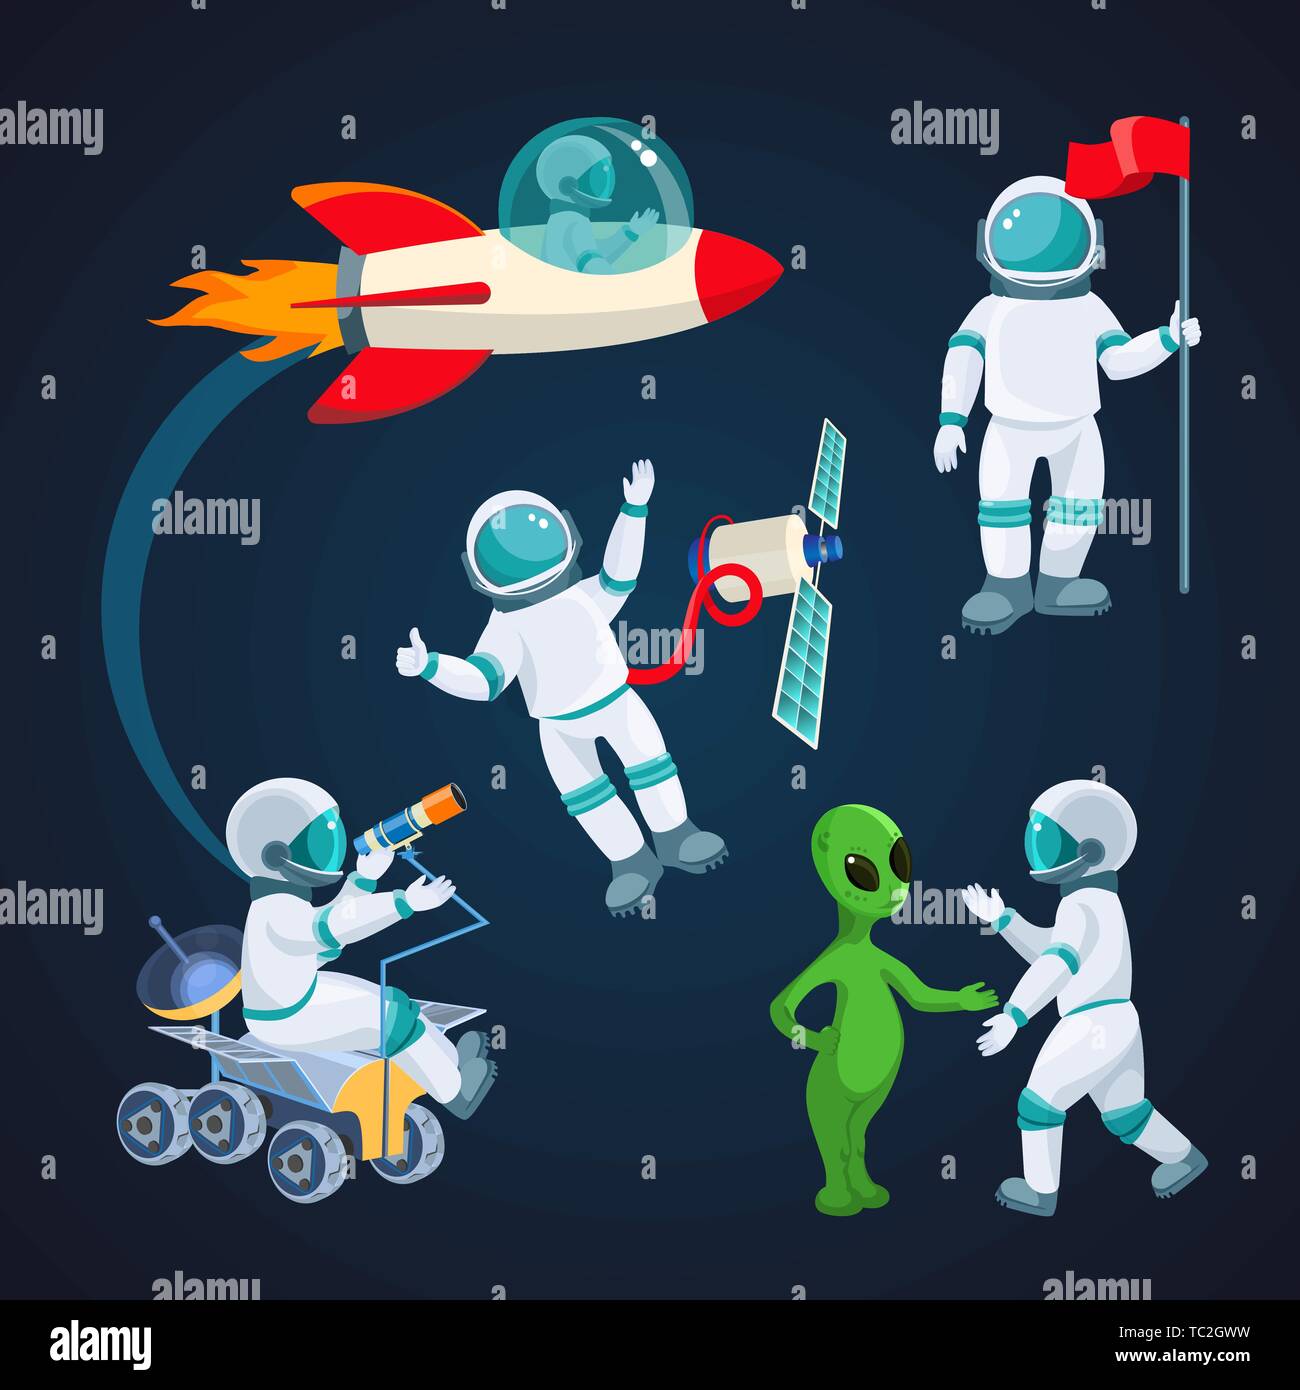 Casco Astronauta Vectores, Iconos, Gráficos y Fondos para Descargar Gratis